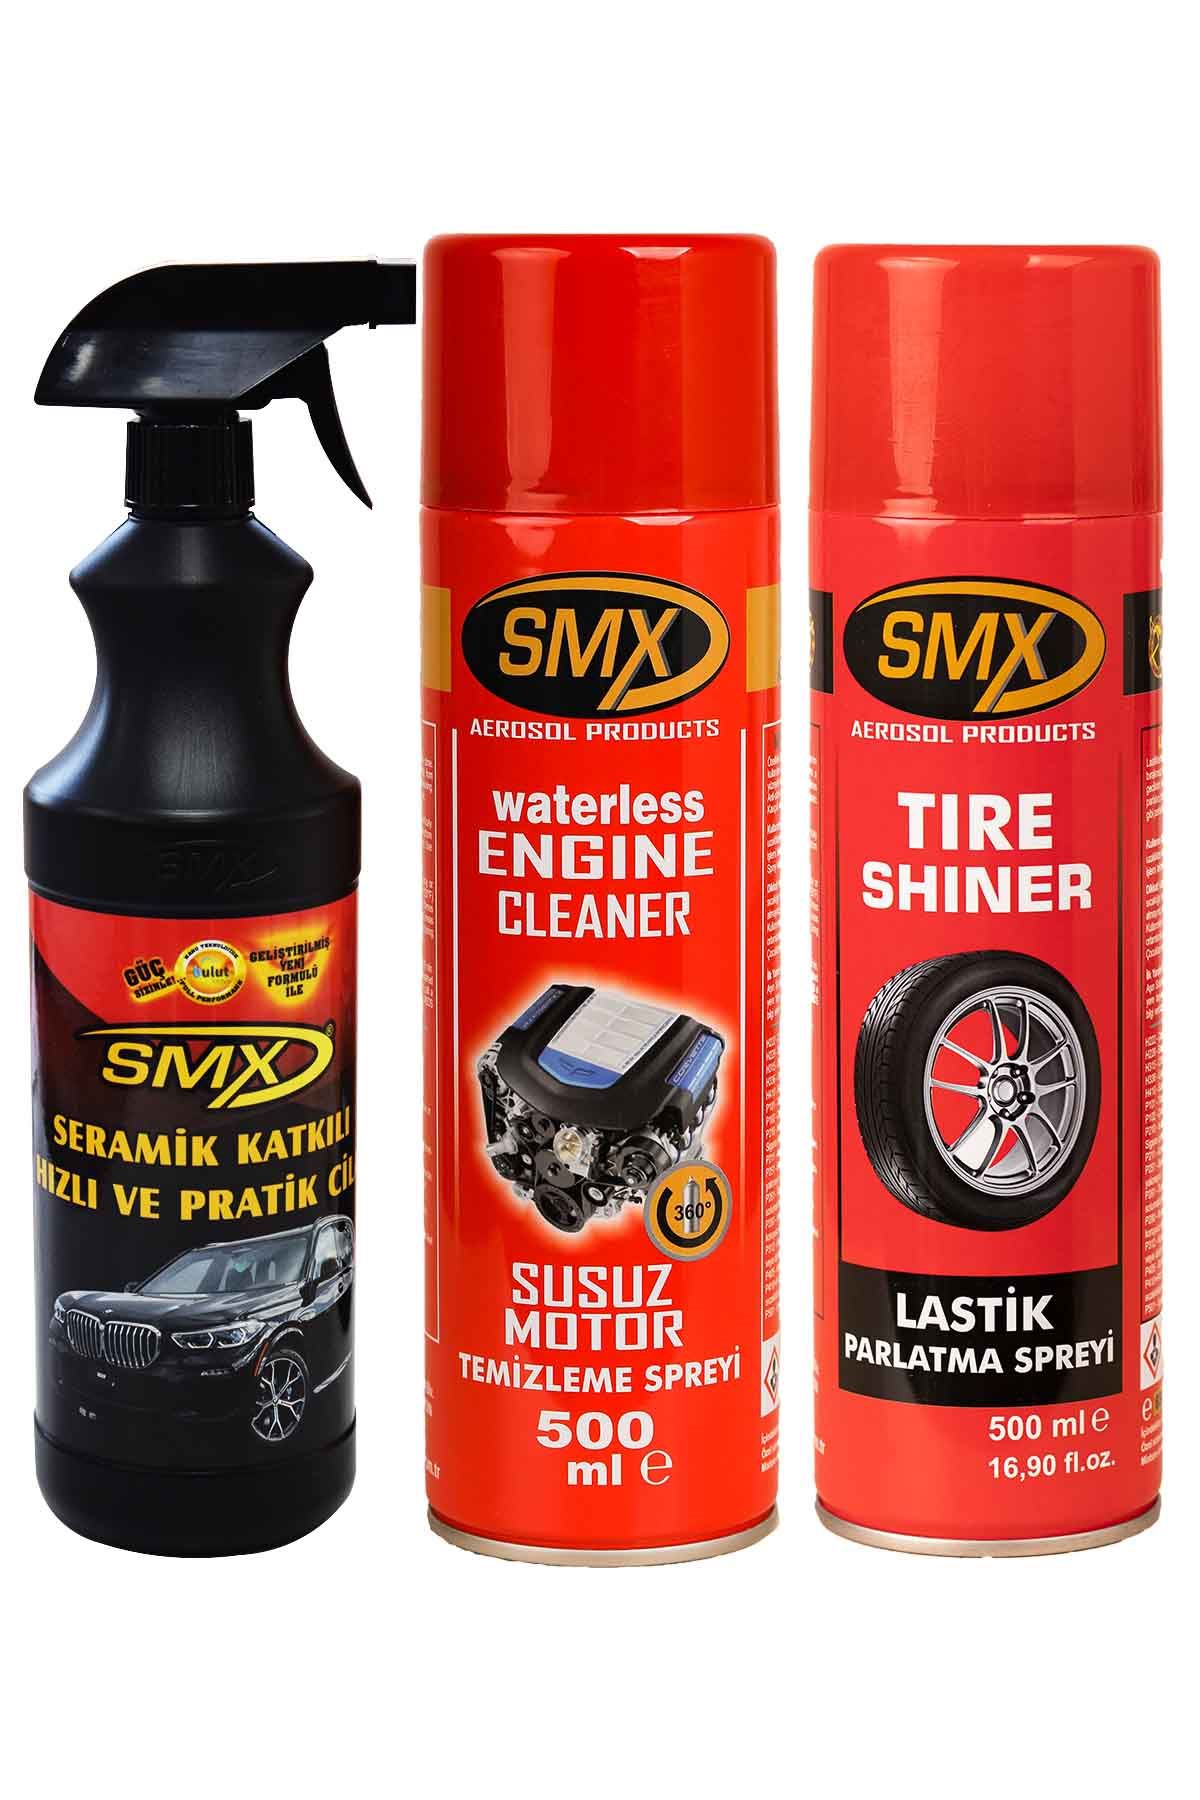 SMX Seramik Cila / Hızlı Cila / Pratik Cila / Susuz Motor Temizleme Spreyi / Lastik Parlatma Spreyi